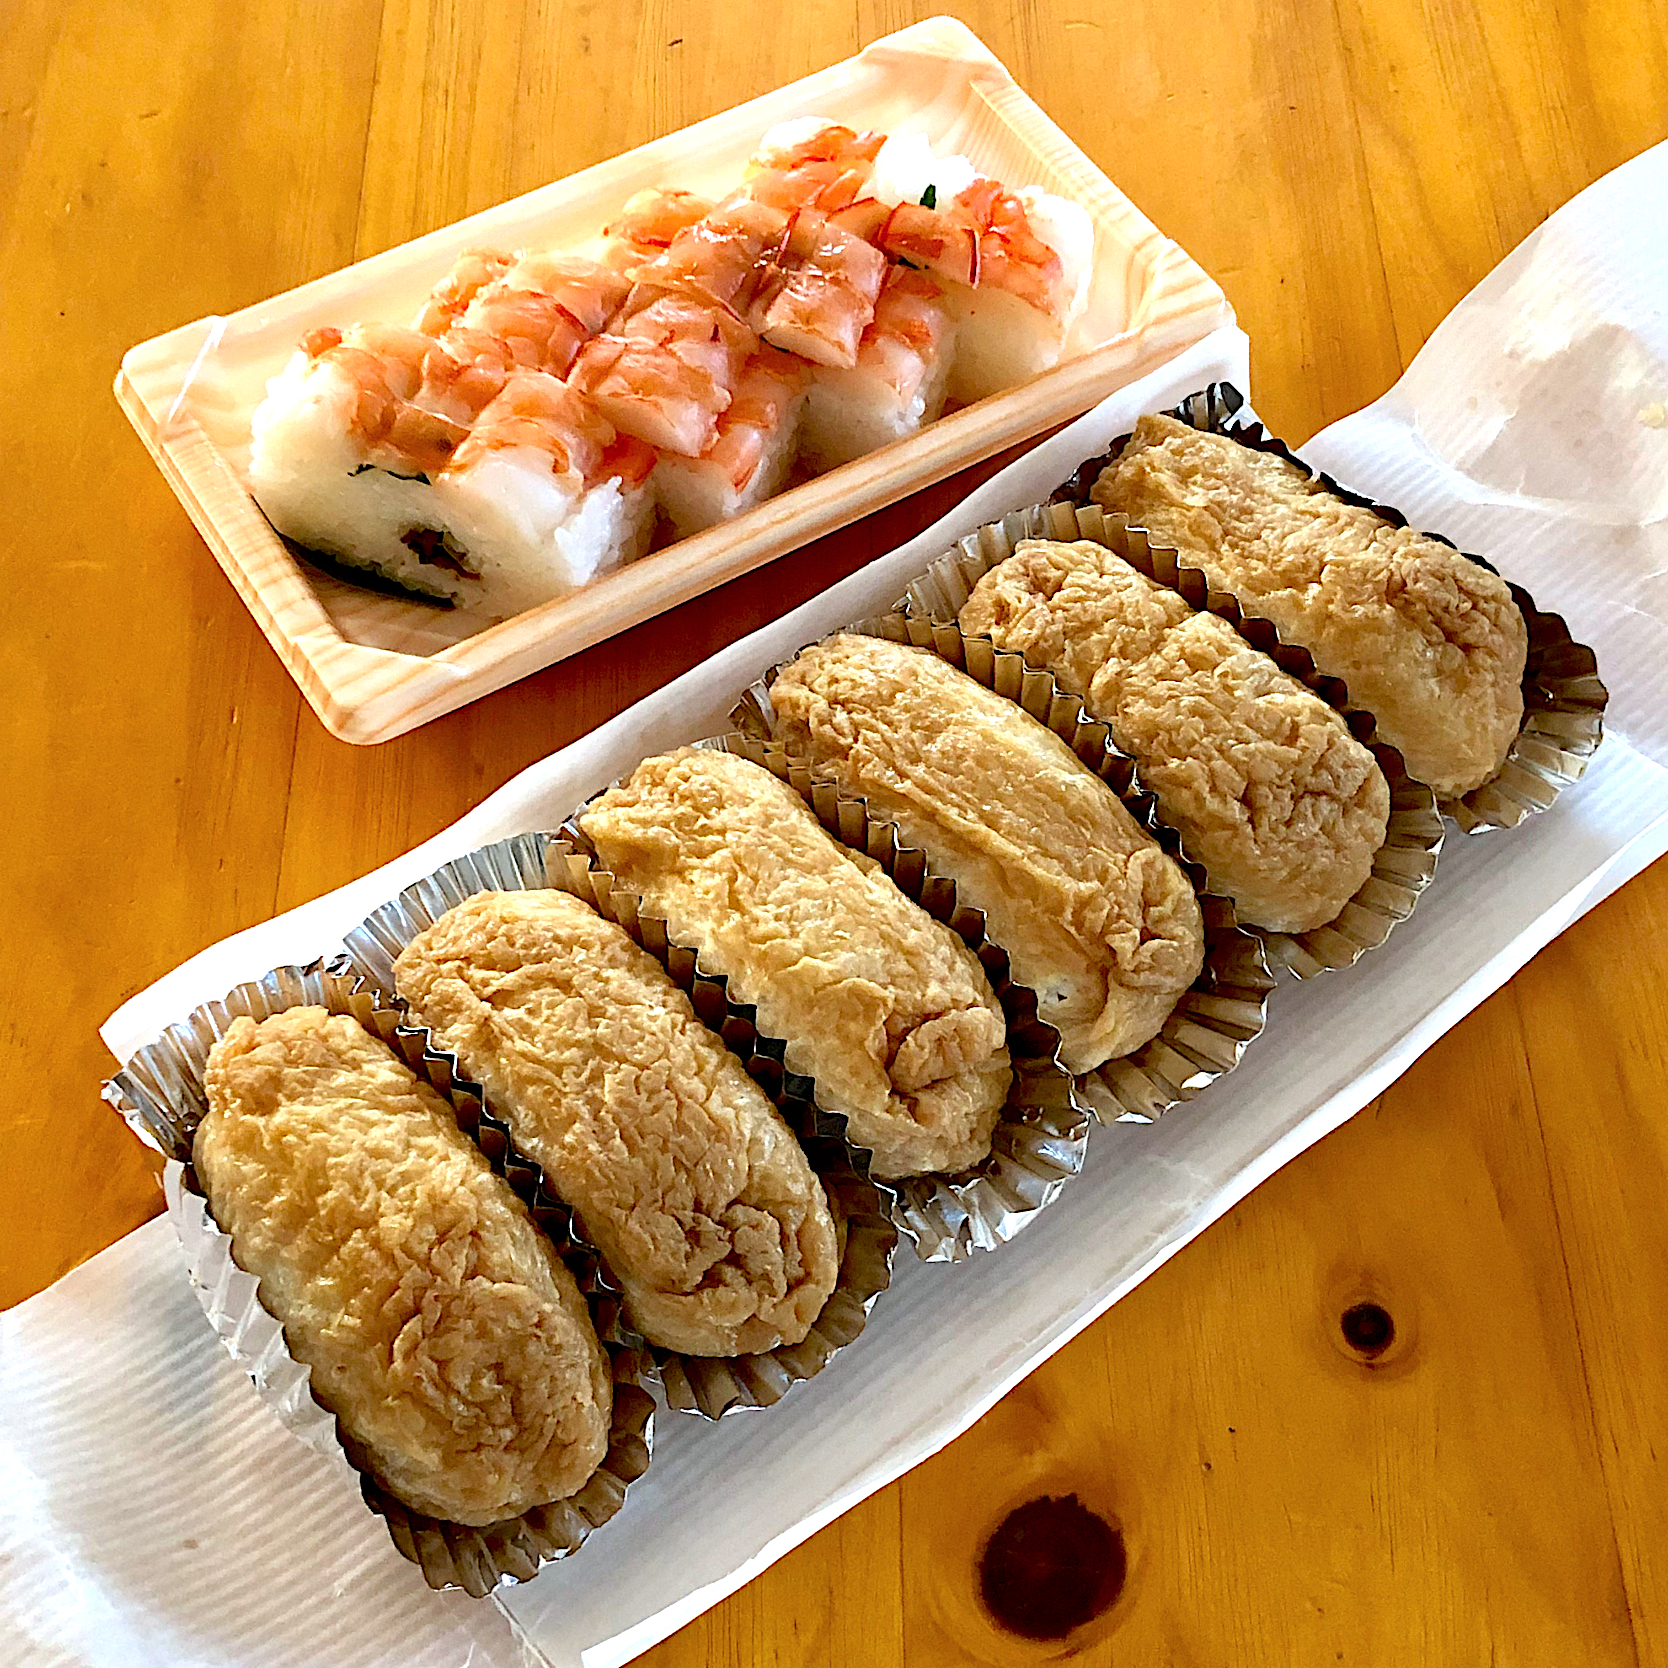 熊本、福み屋の稲荷寿司と海老の押し寿司